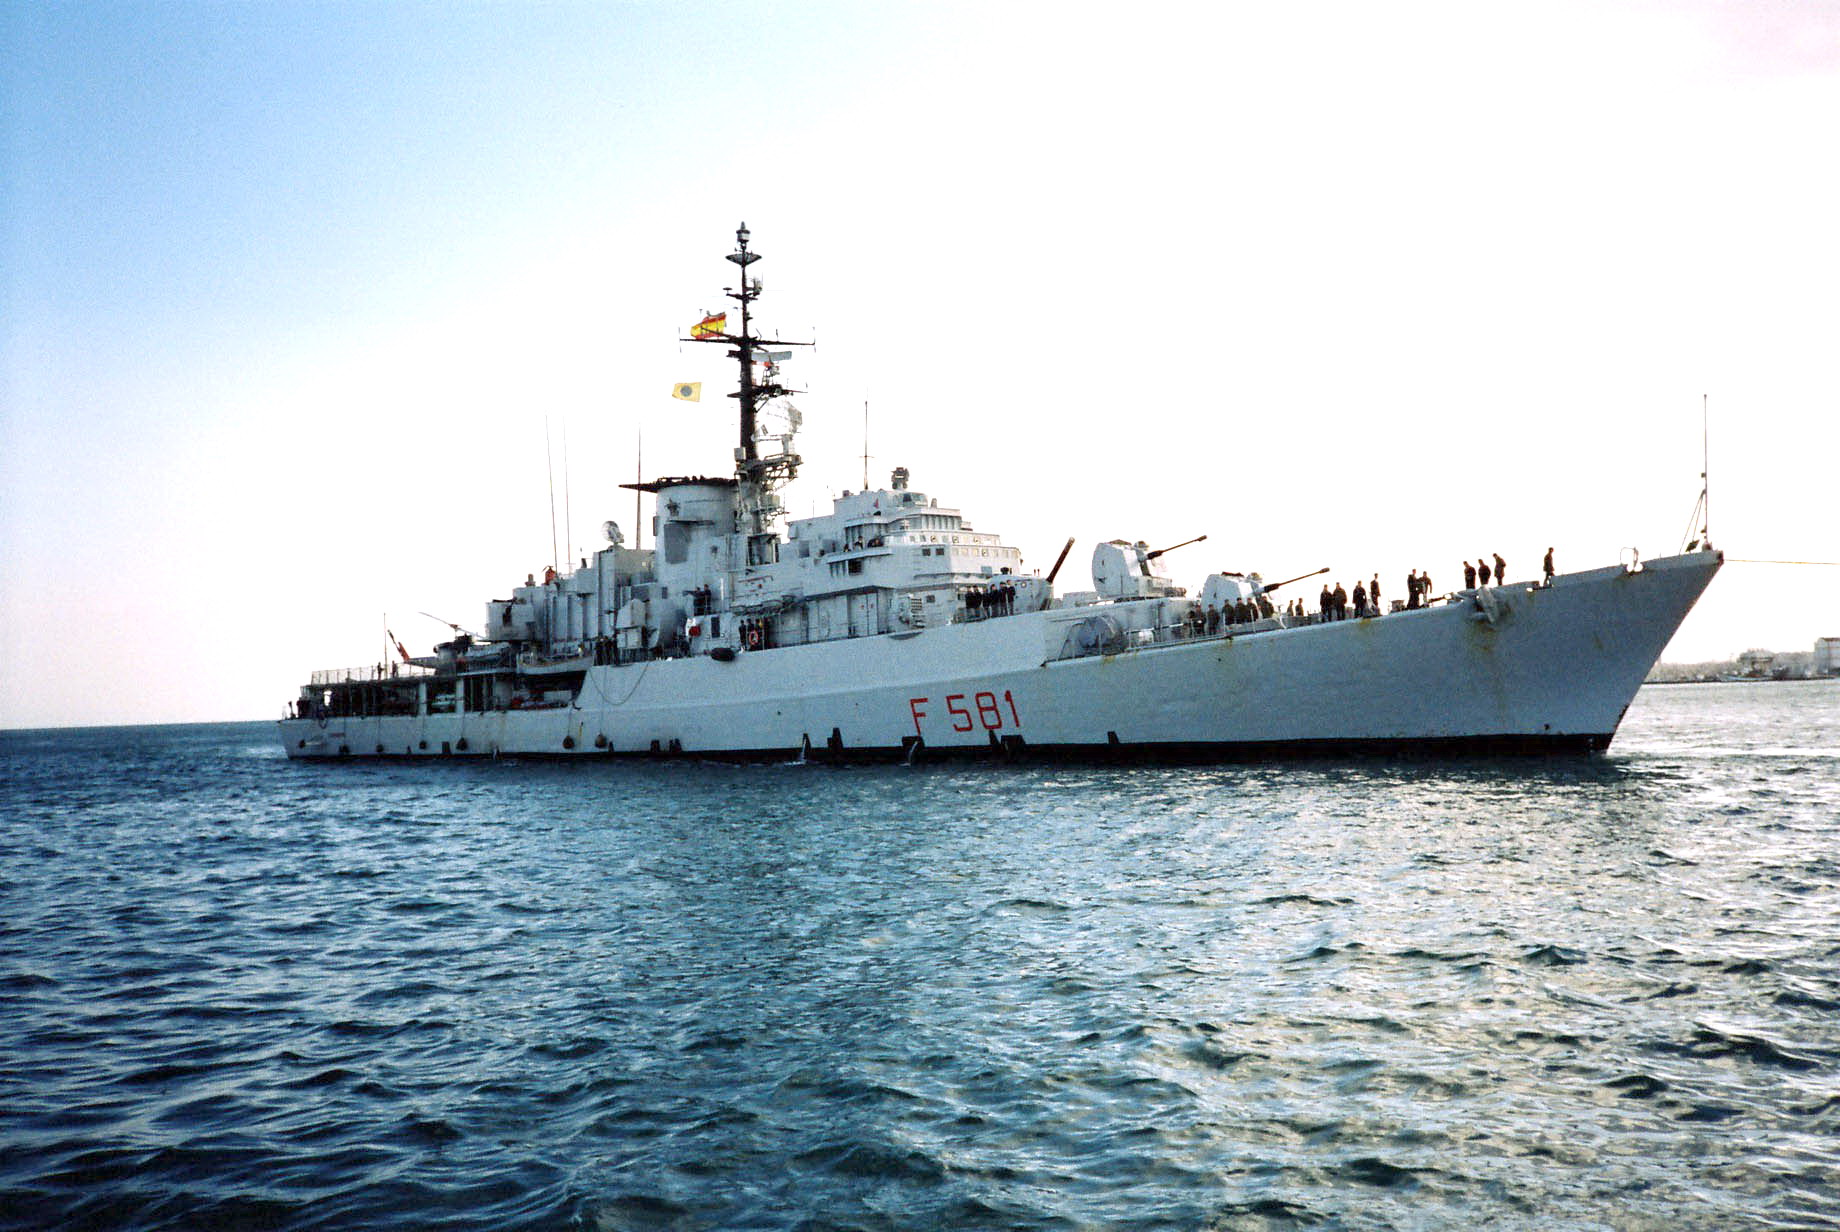 La fregata portaelicotteri Carabiniere (1968-2008)